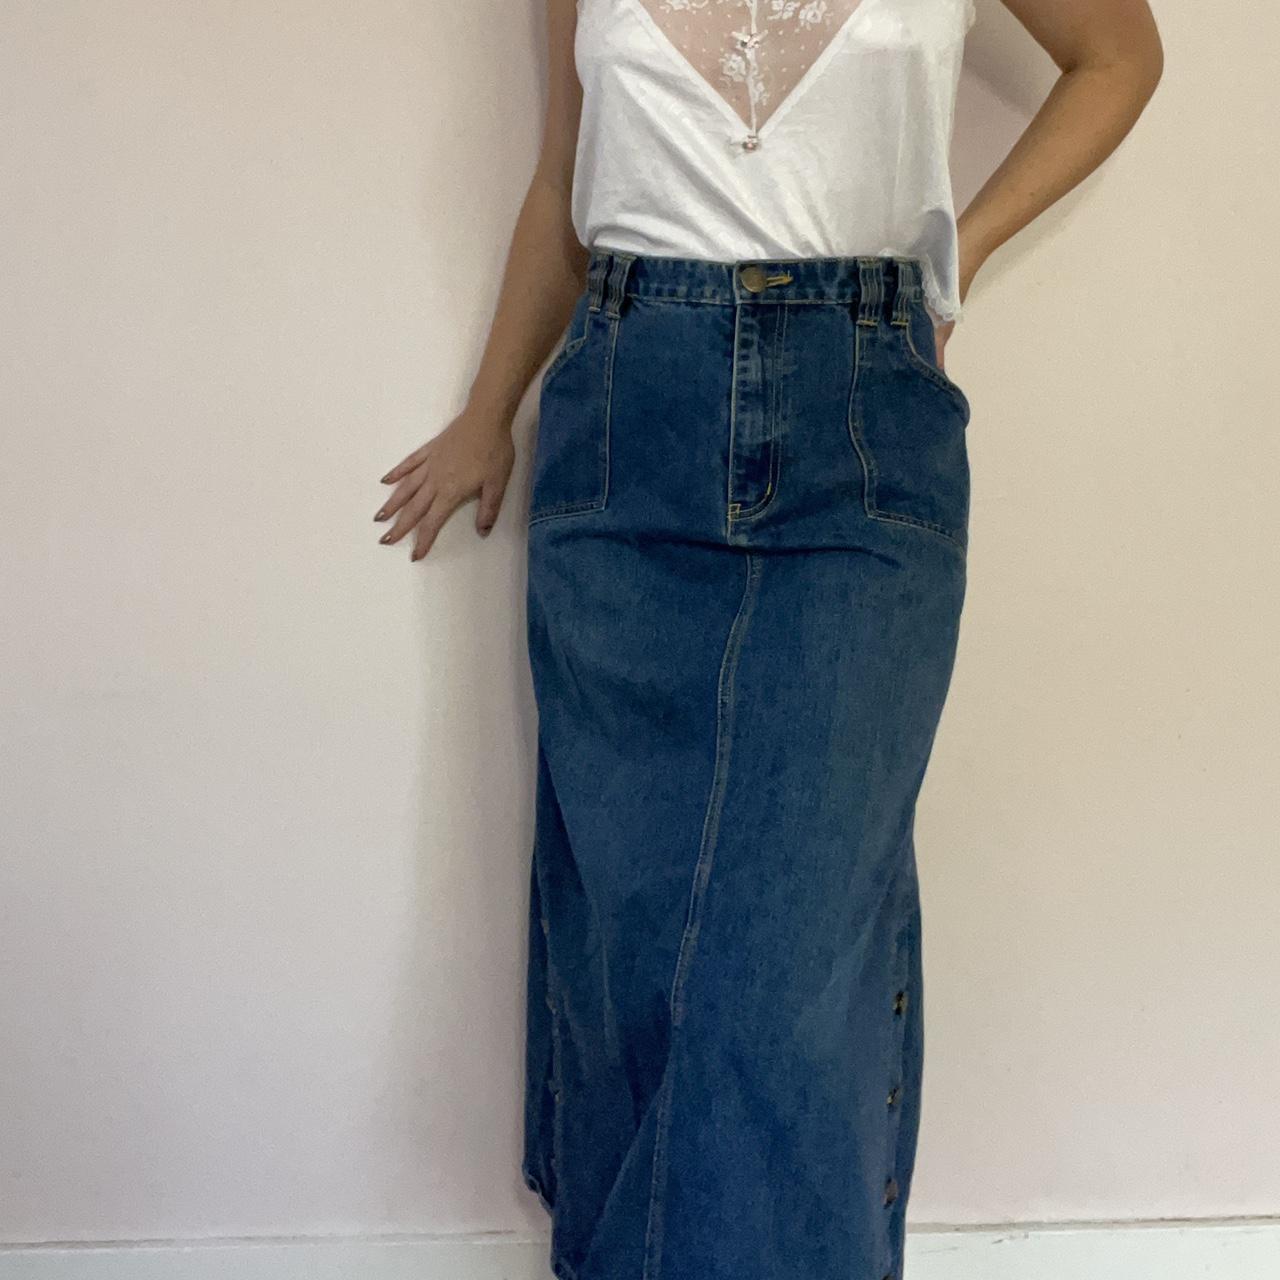 Y2K vintage denim maxi skirt size 36 inches waist... - Depop